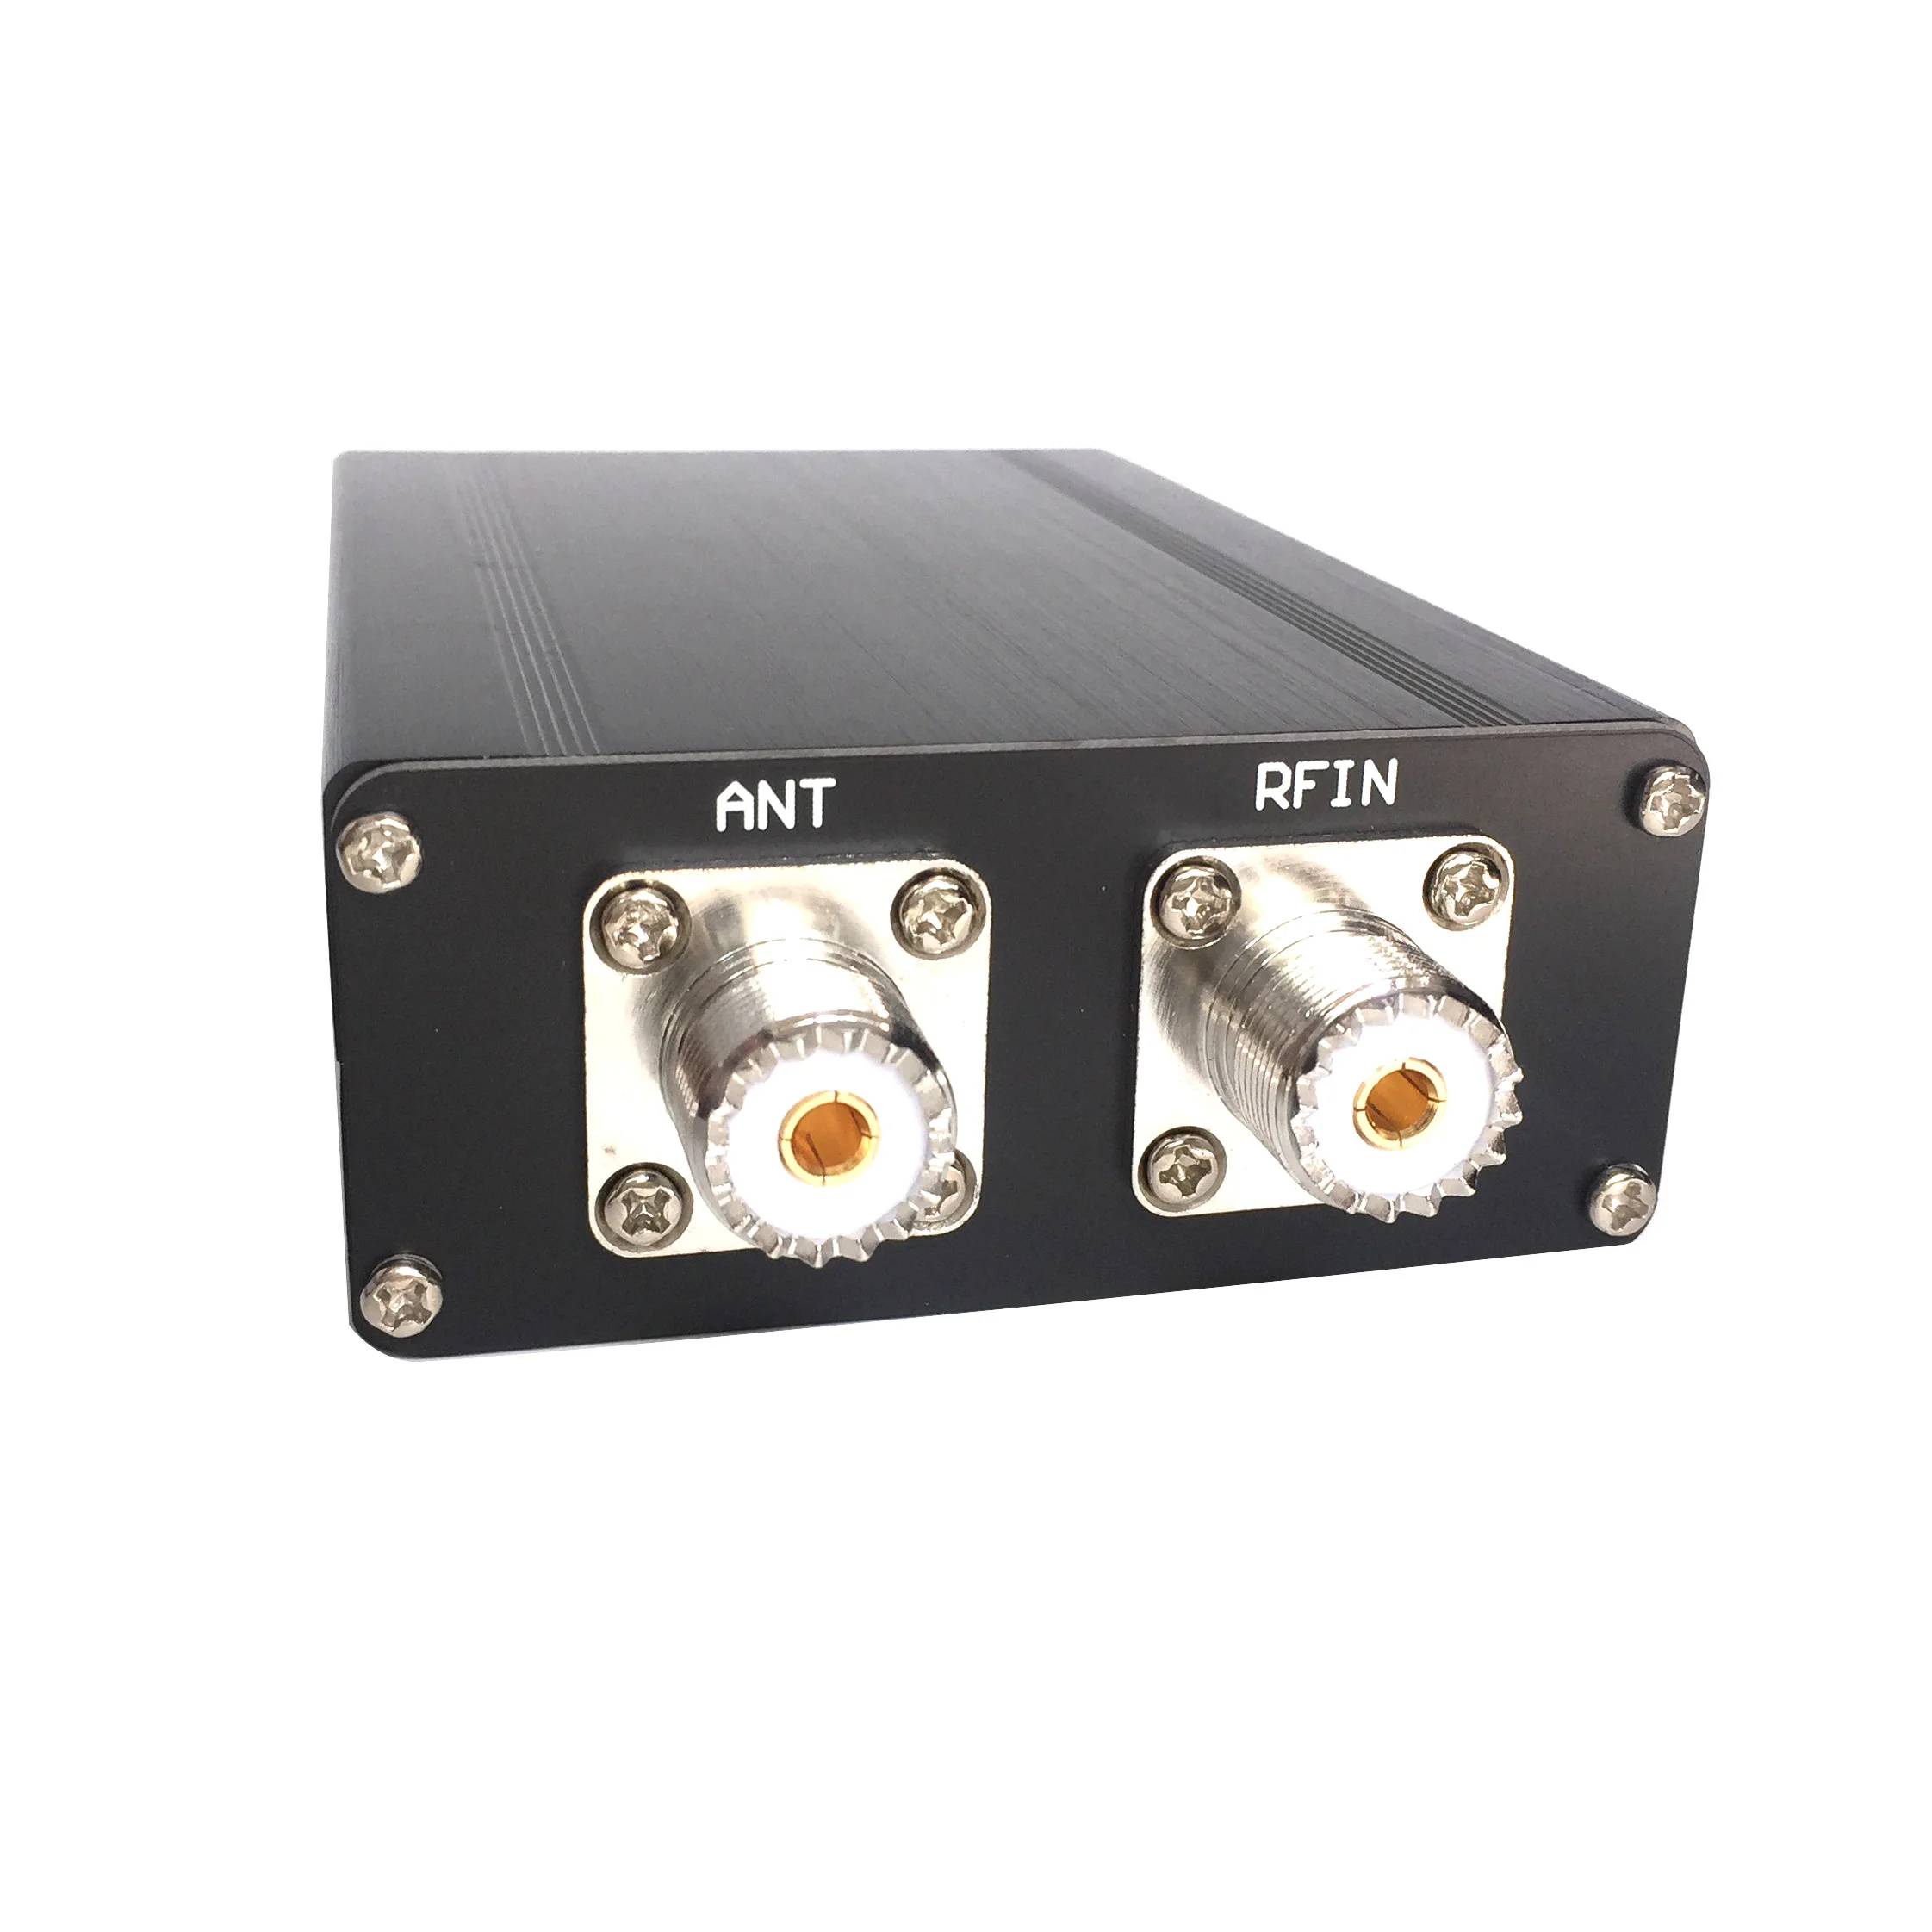 Готовый мини-автоматический антенный тюнер ATU-100 ATU-100 1,8-50 МГц от N7DDC 7x7 + Mini 0.96 OLED + Металлический корпус + батарея 1350 МА4